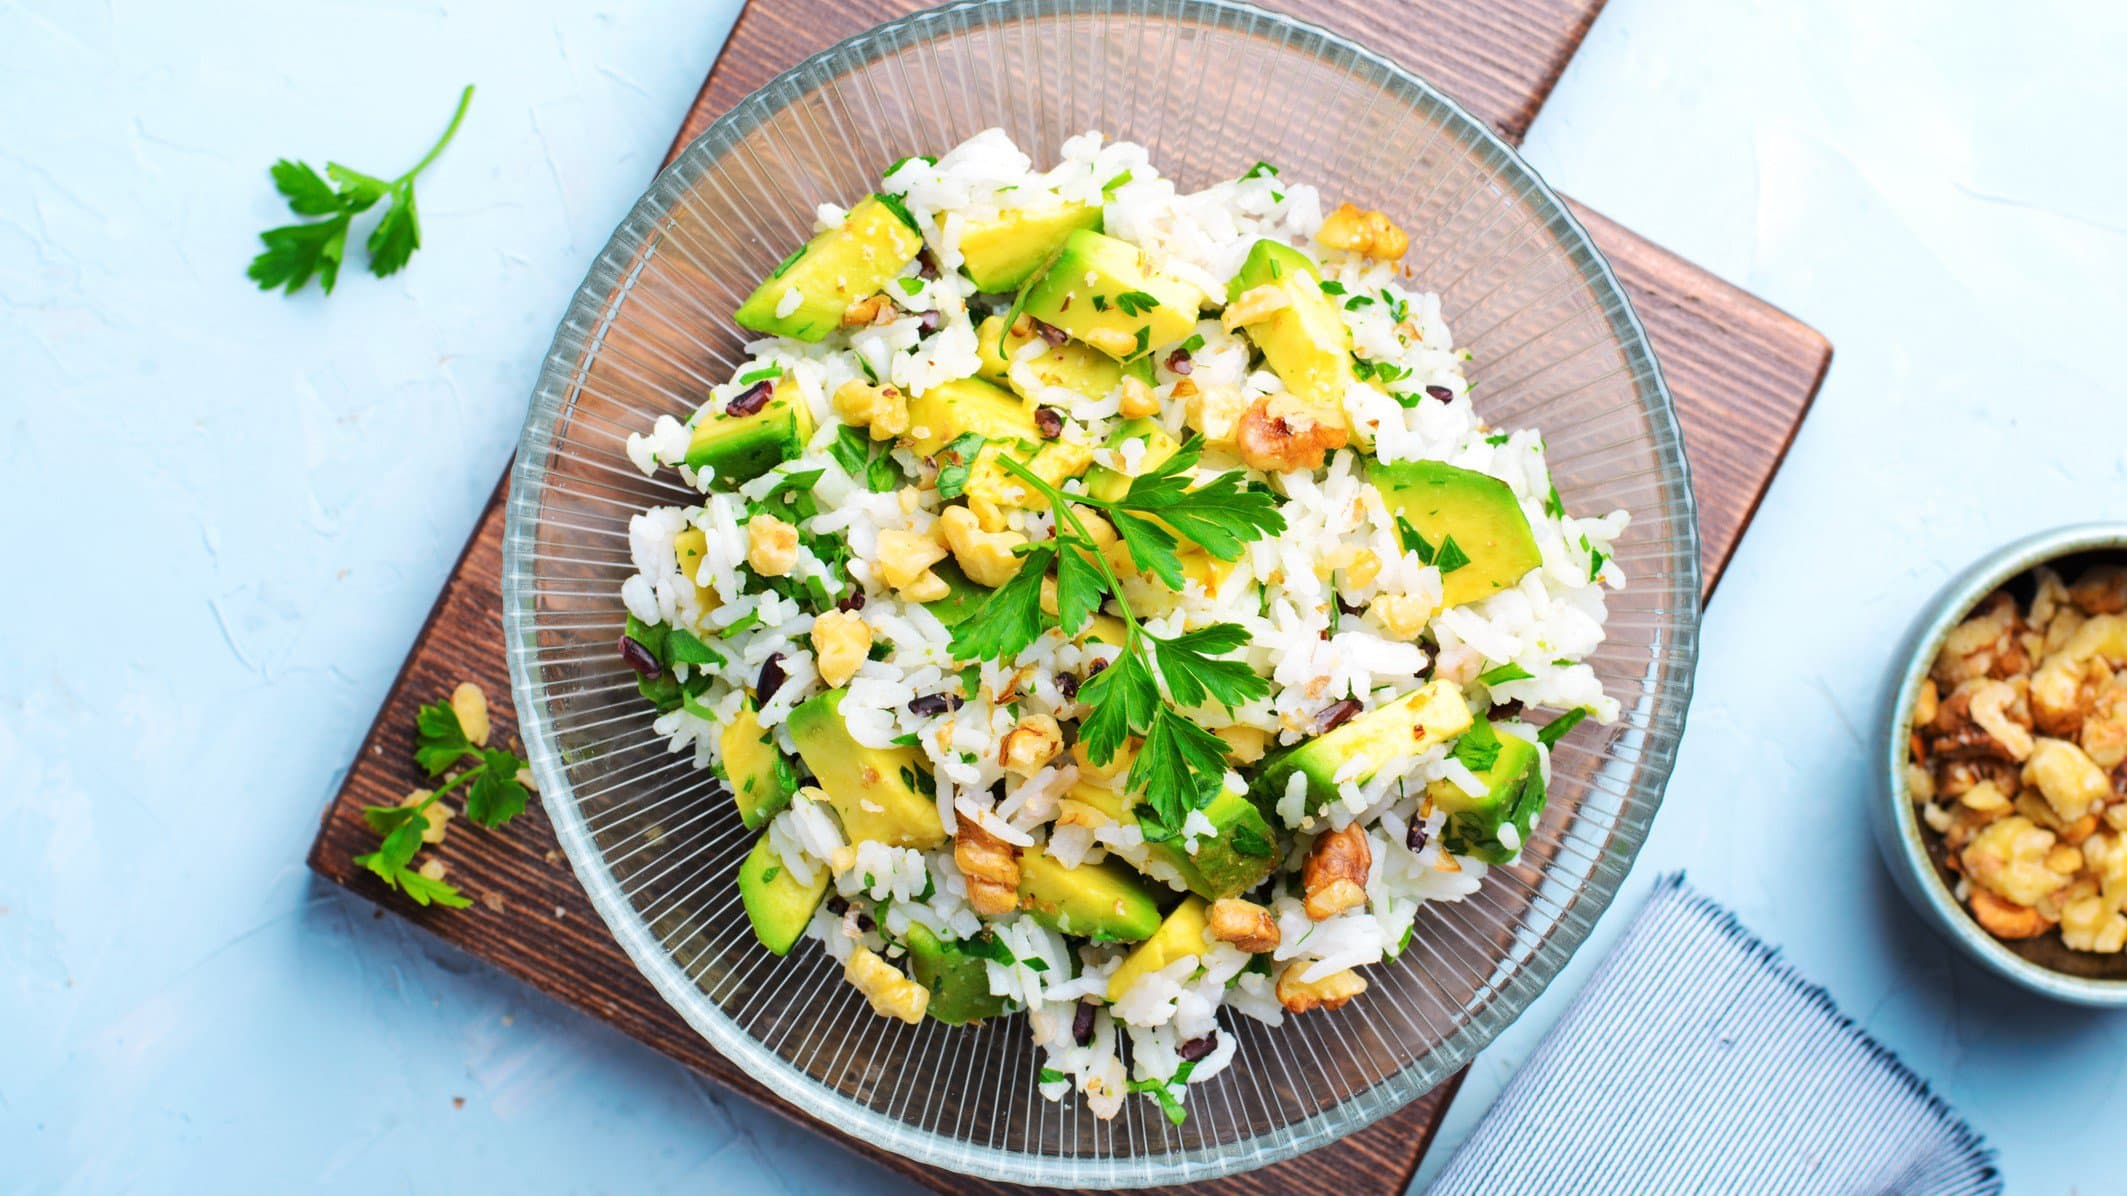 Draufsicht: Ein Teller Reissalat mit Avocado und Nüssen auf einem hellblauen Untergrund.